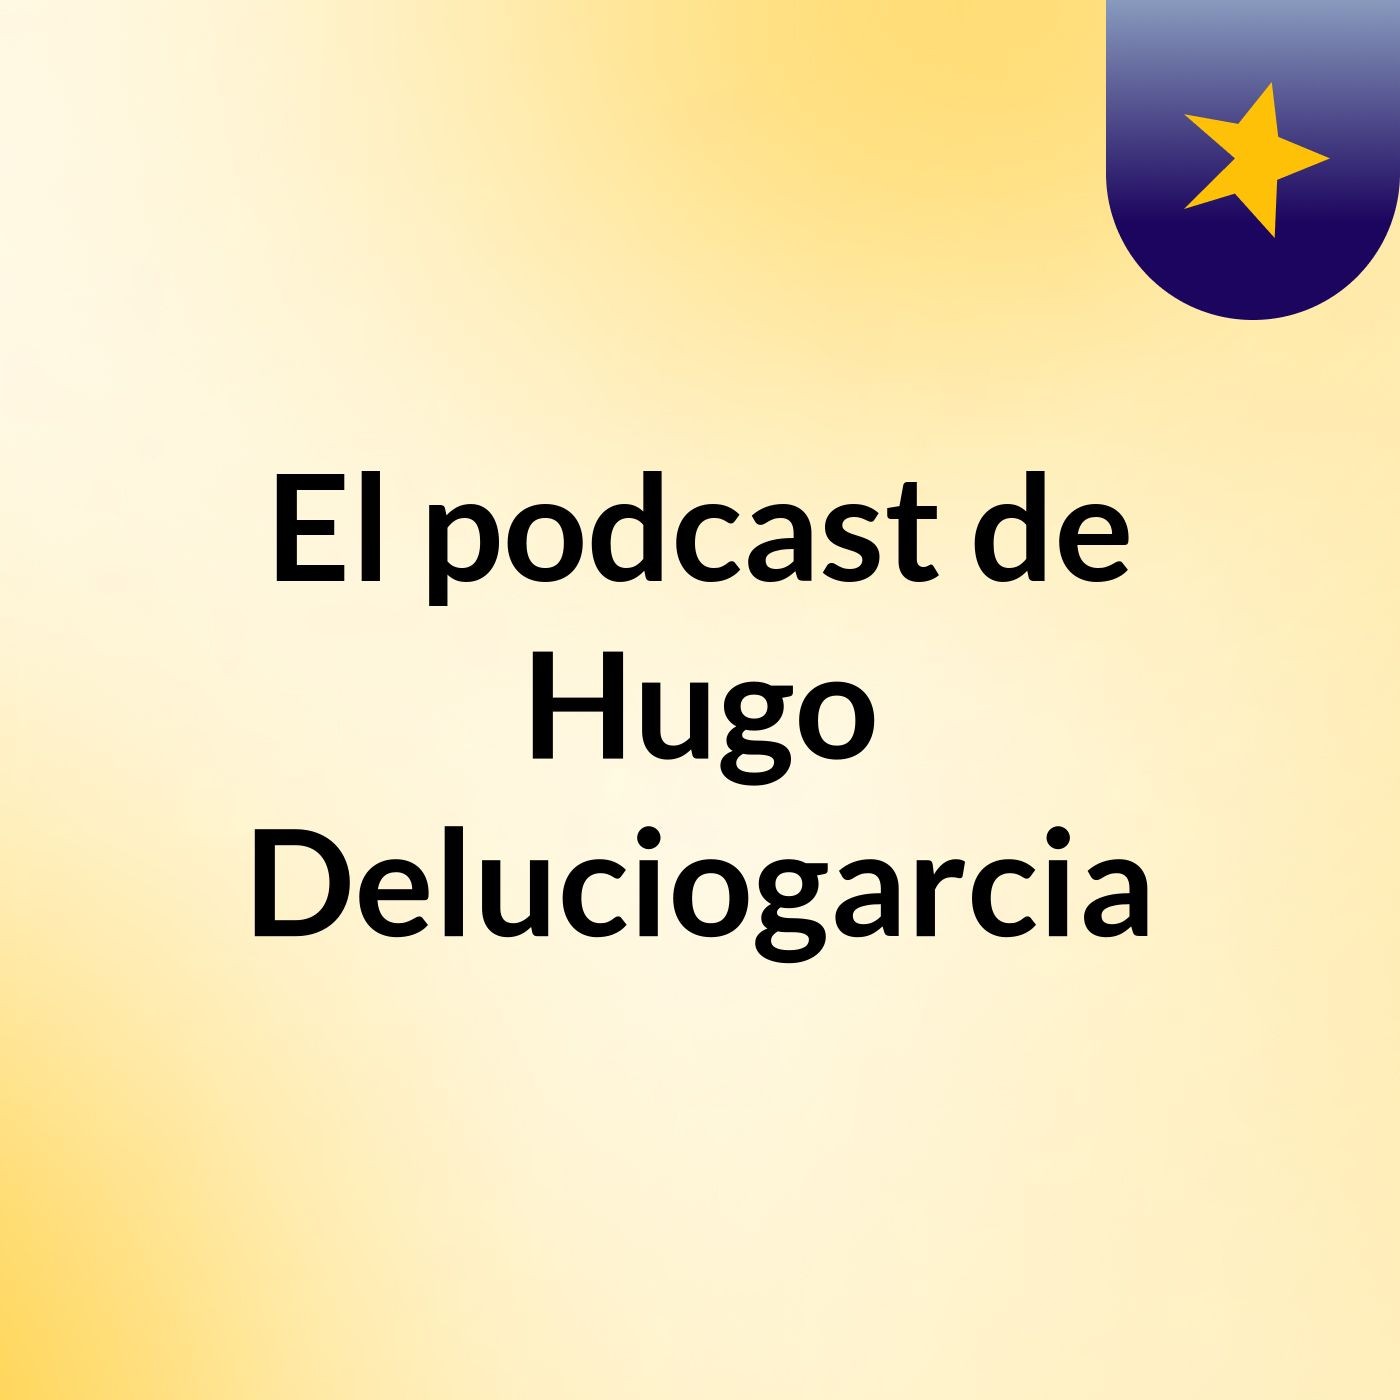 El podcast de Hugo Deluciogarcia